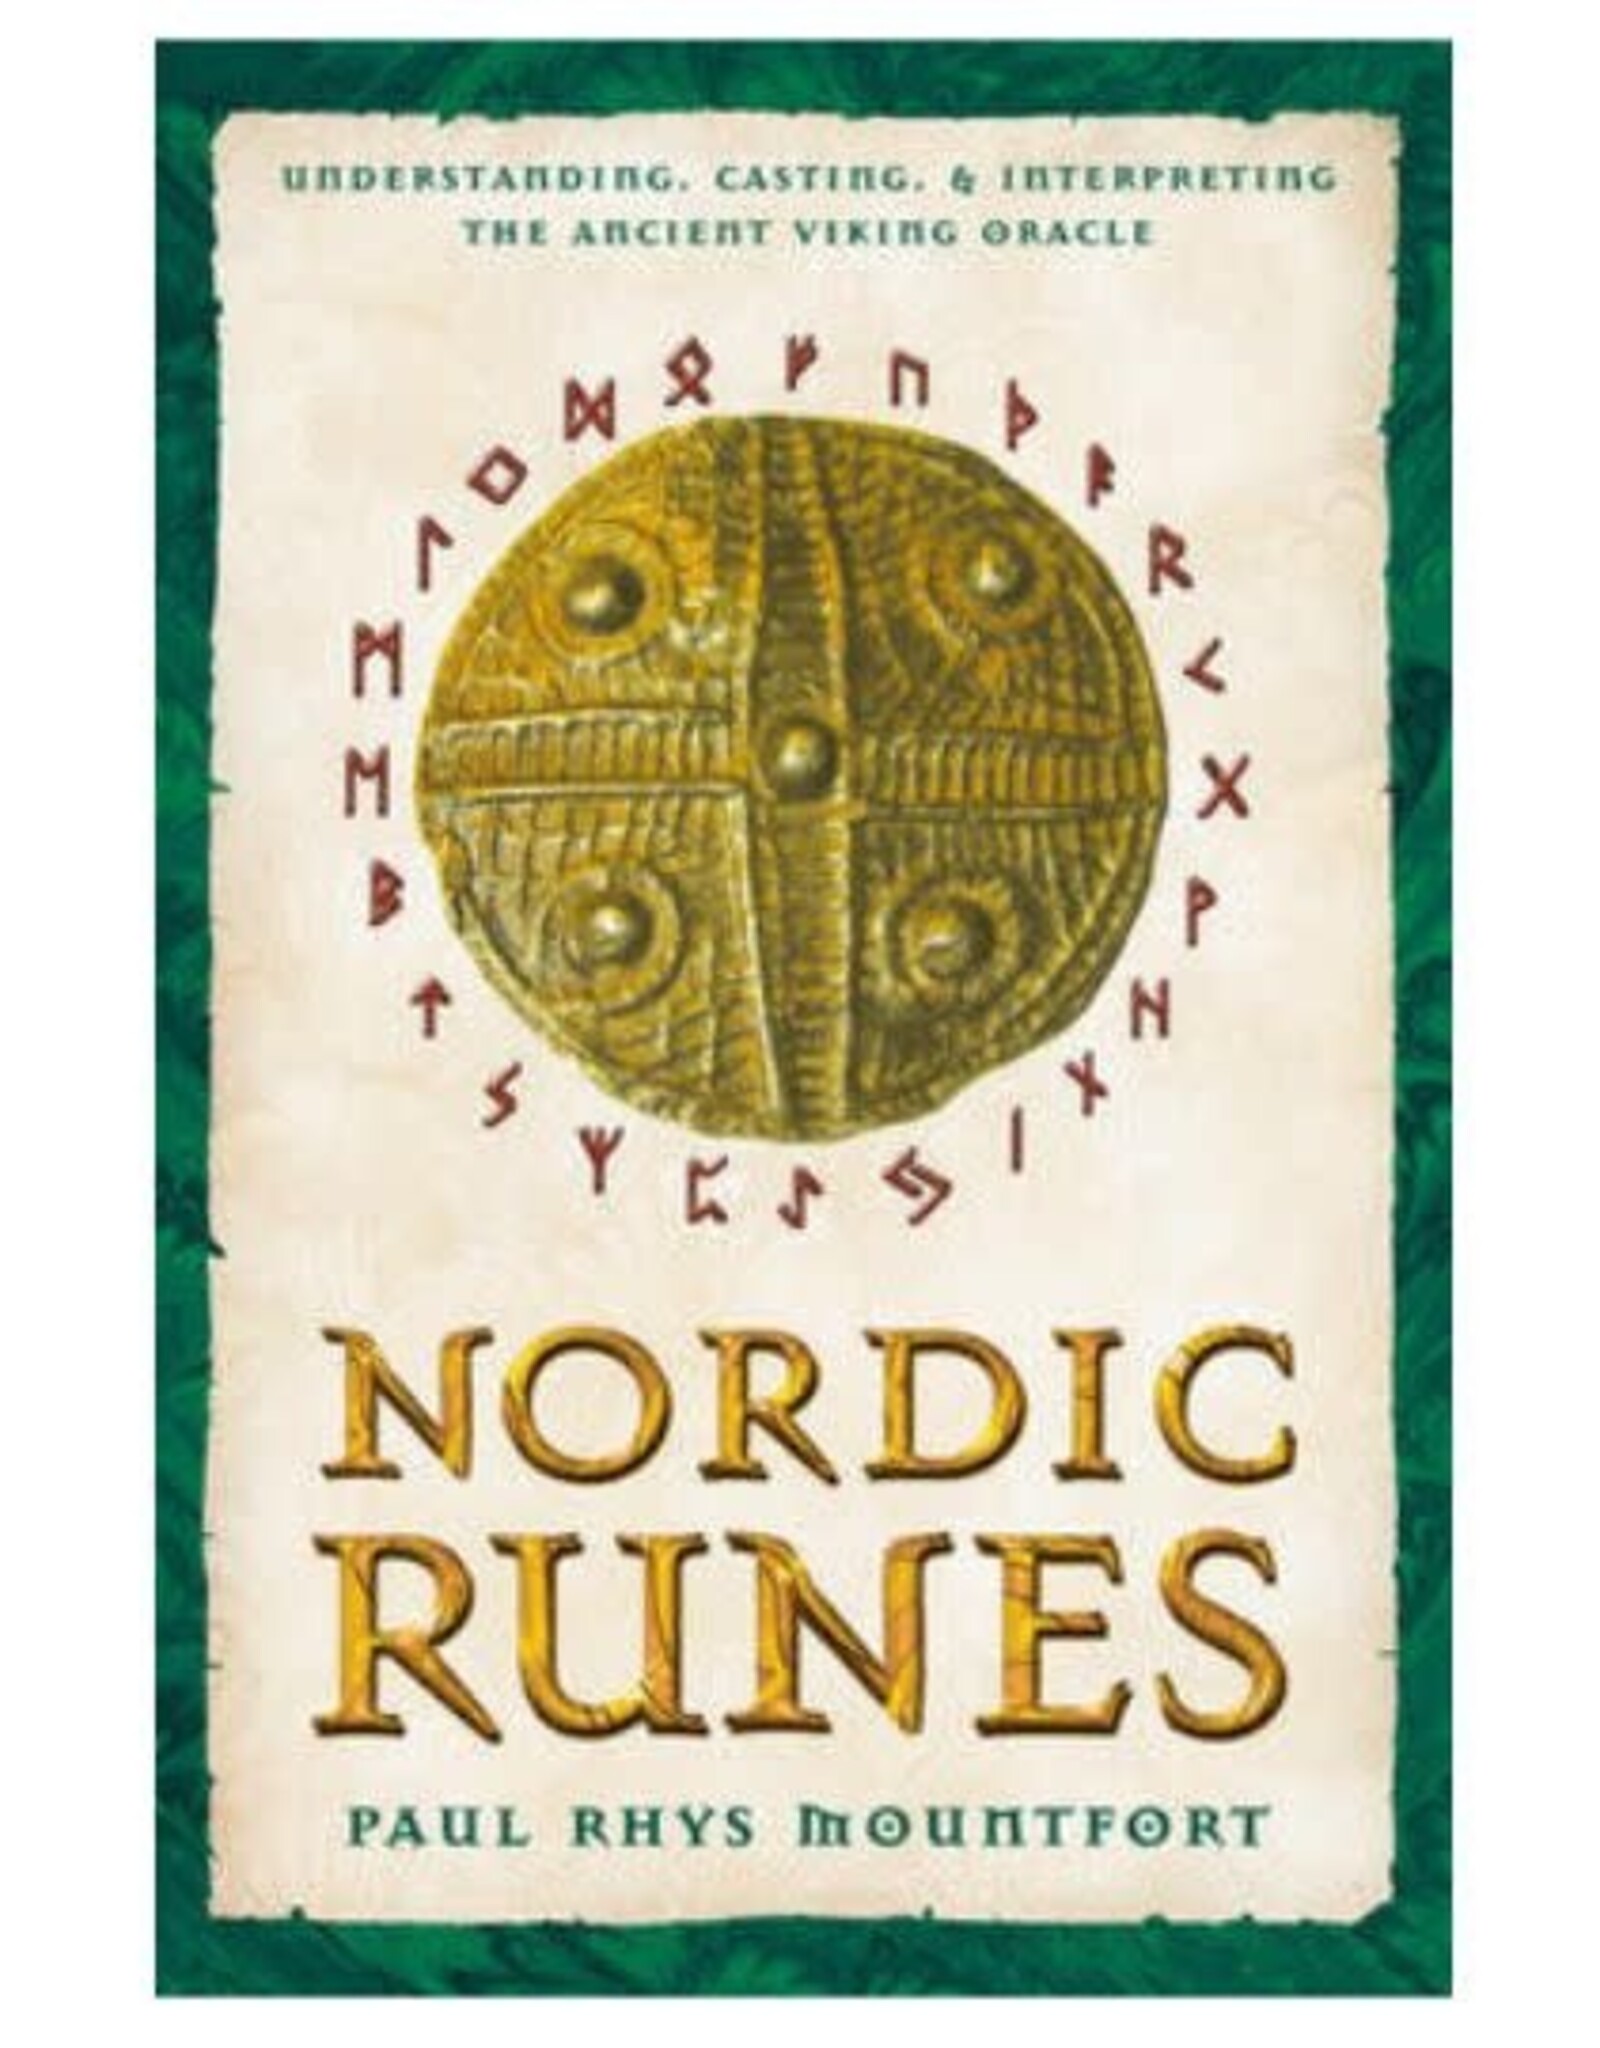 Paul Phys Mountfort Nordic Runes by Paul Rhys Mountfort